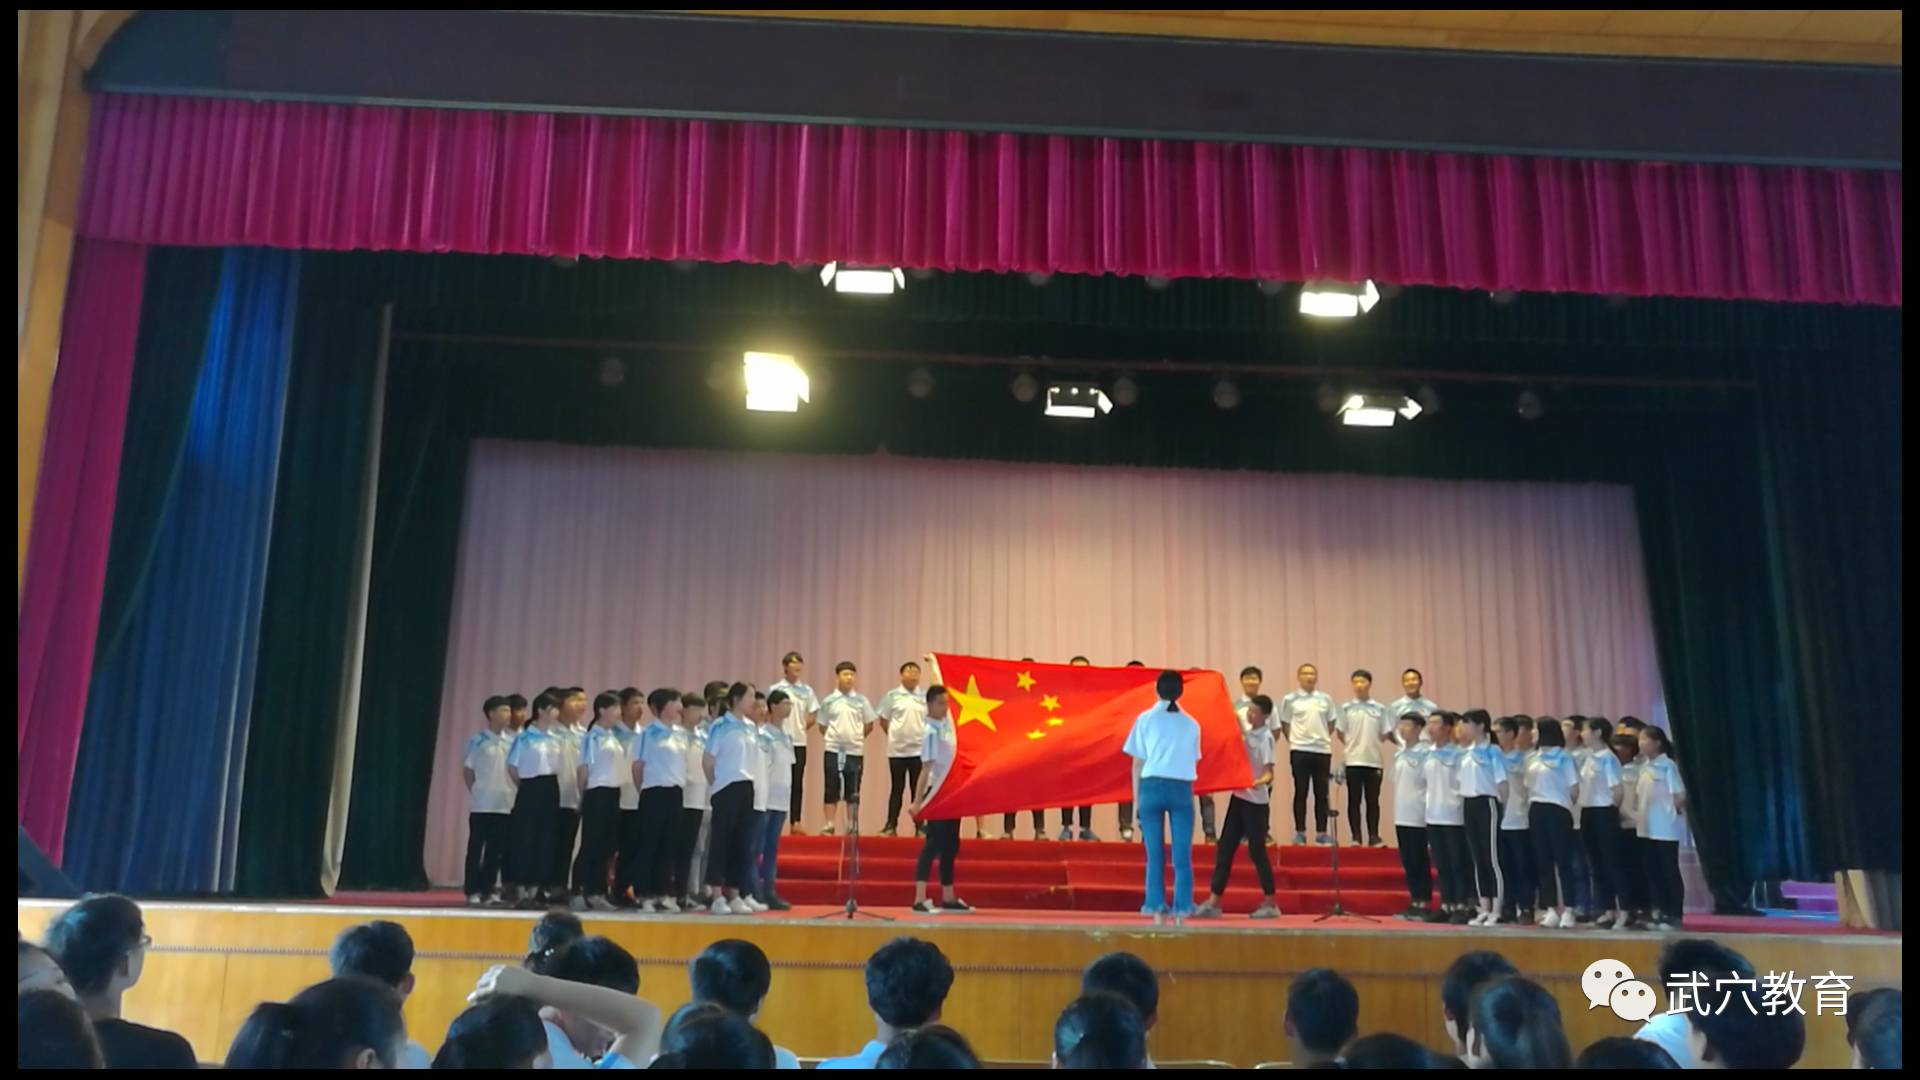 武穴师范学校举行"夏之梦"红歌会,学校15个班级学生演唱红歌,音乐组